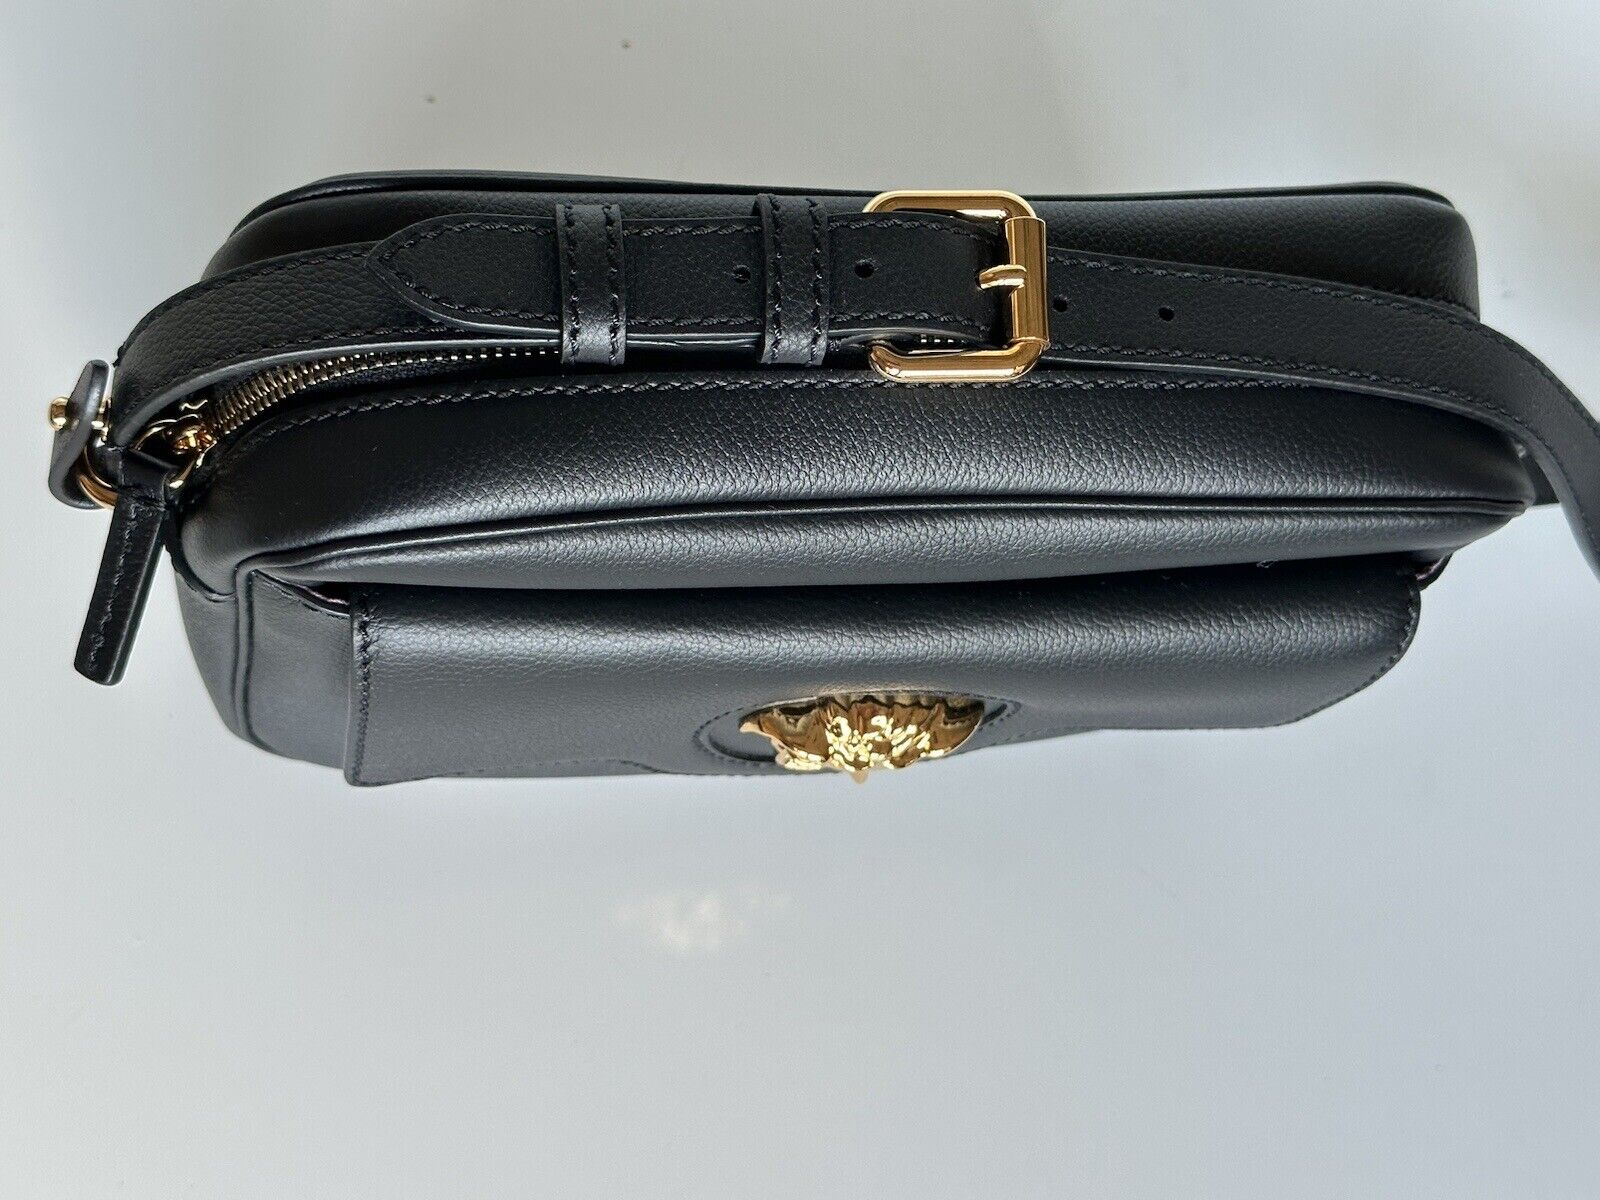 NWT $1400 Versace Черная сумка через плечо Medusa Head из телячьей кожи 1008102 IT 